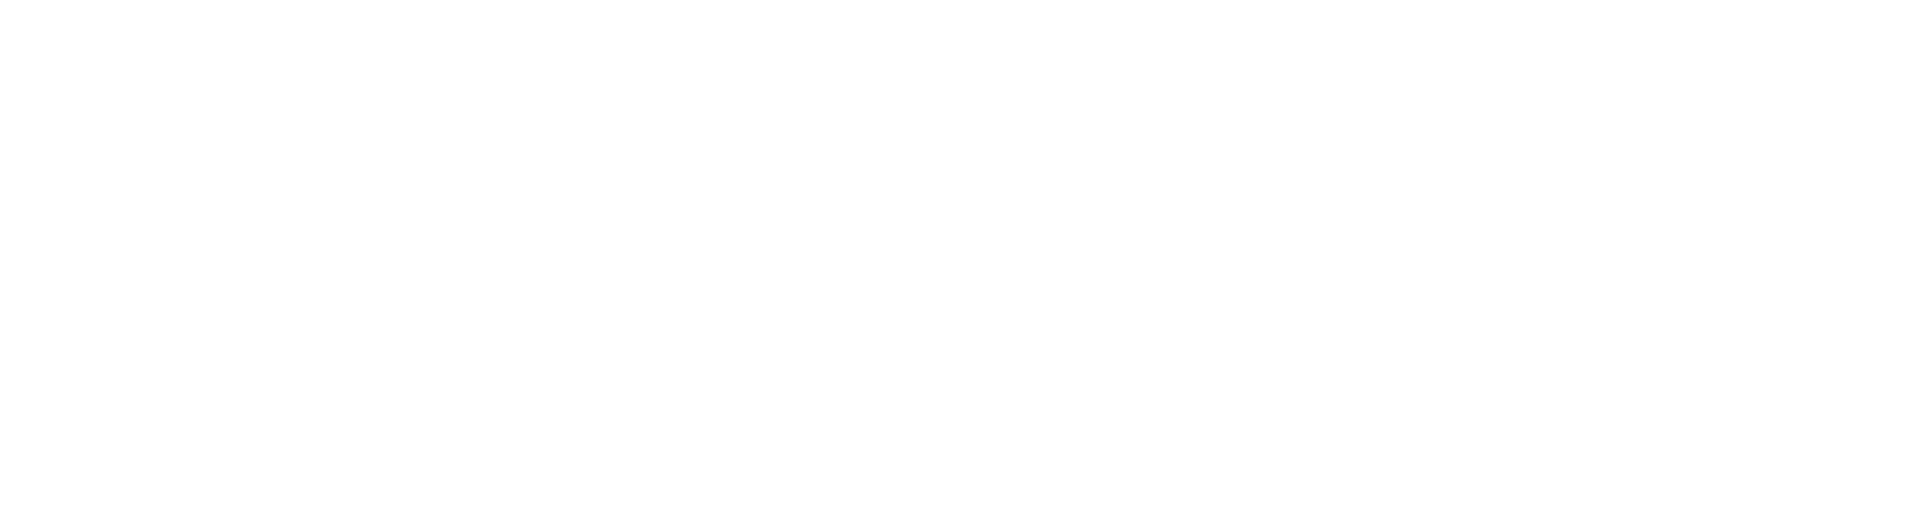 Institut Rousseau logo 2021